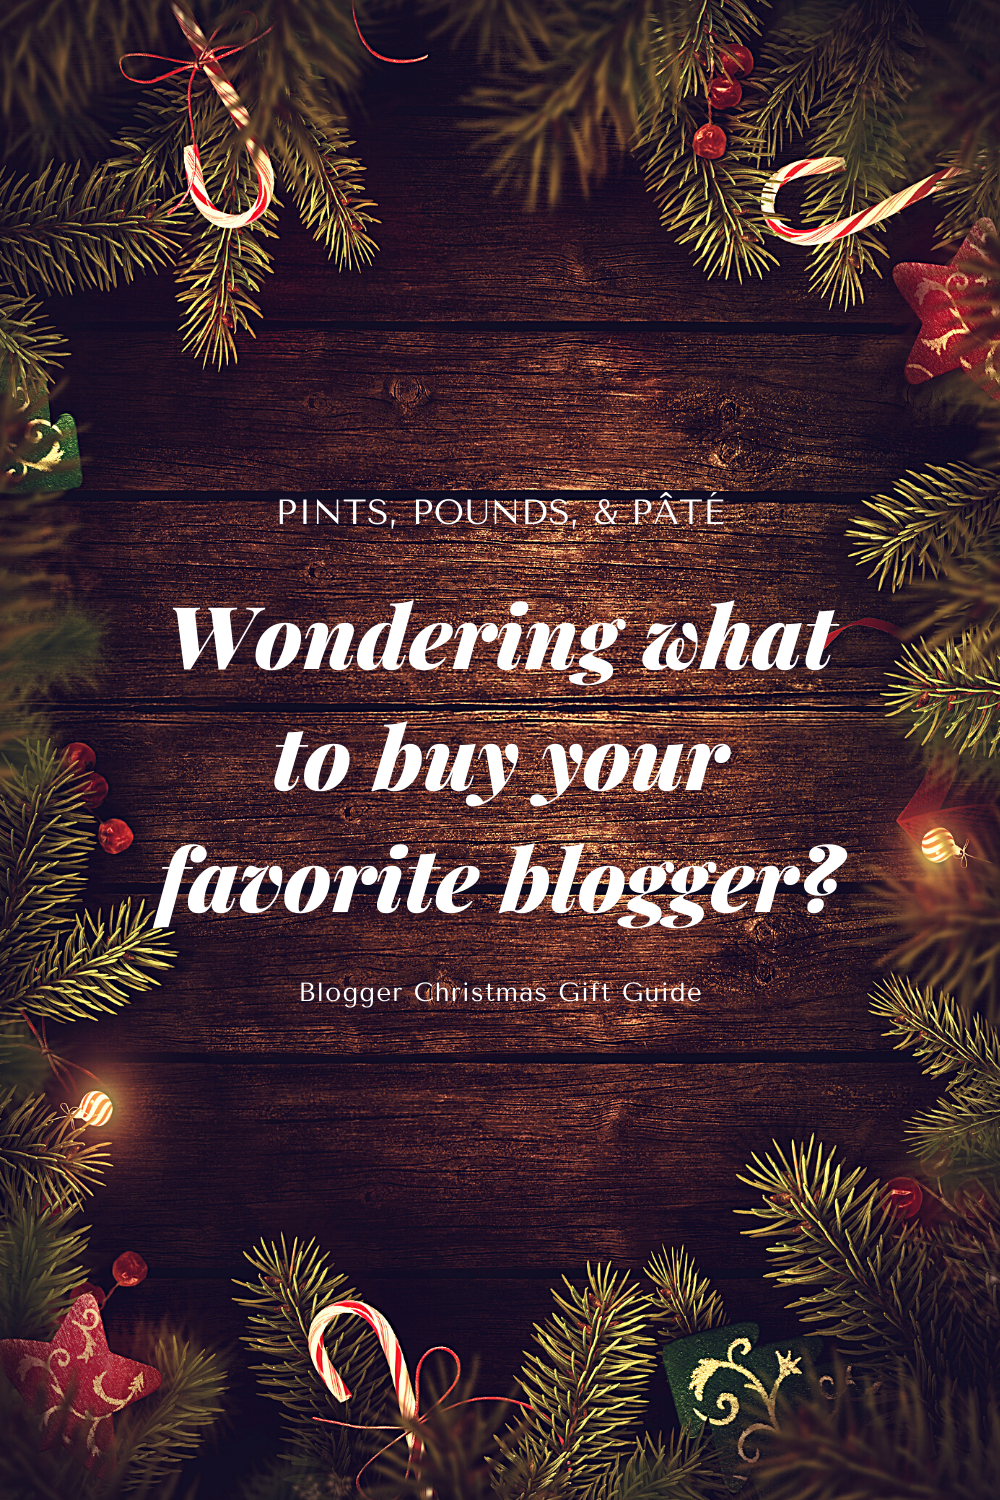 Blogger Christmas Gift Guide